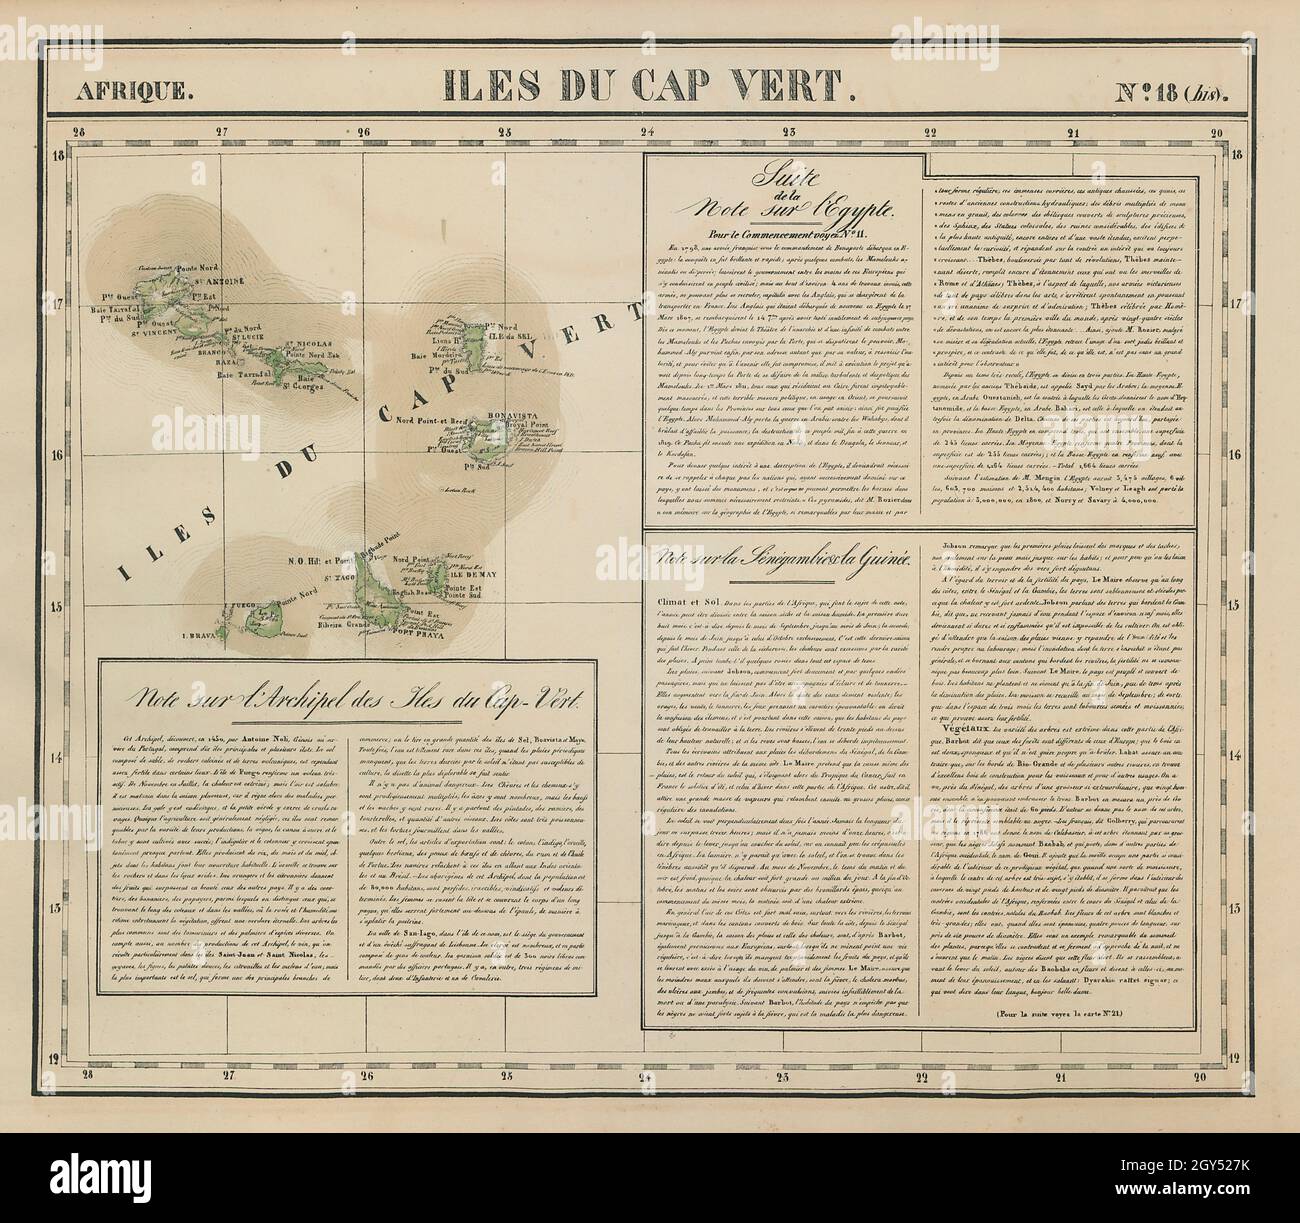 Afrique. Iles du Cap Vert #18 bis. Cape Verde Islands. VANDERMAELEN 1827 map Stock Photo